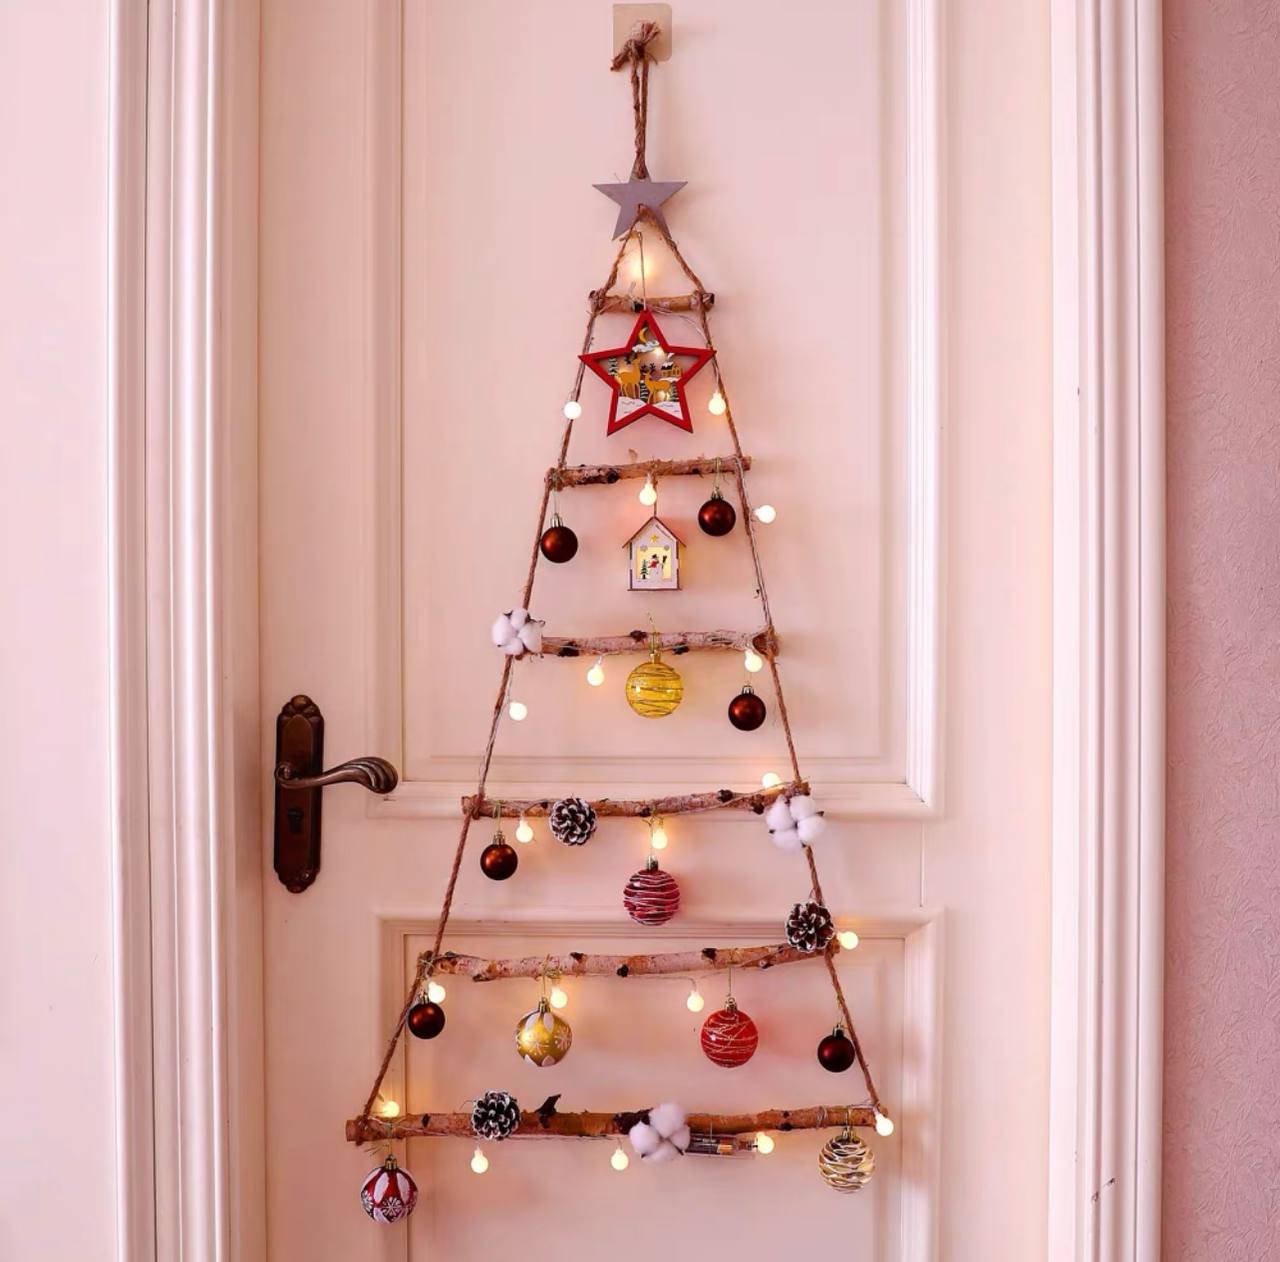 House Hanging Christmas Tree